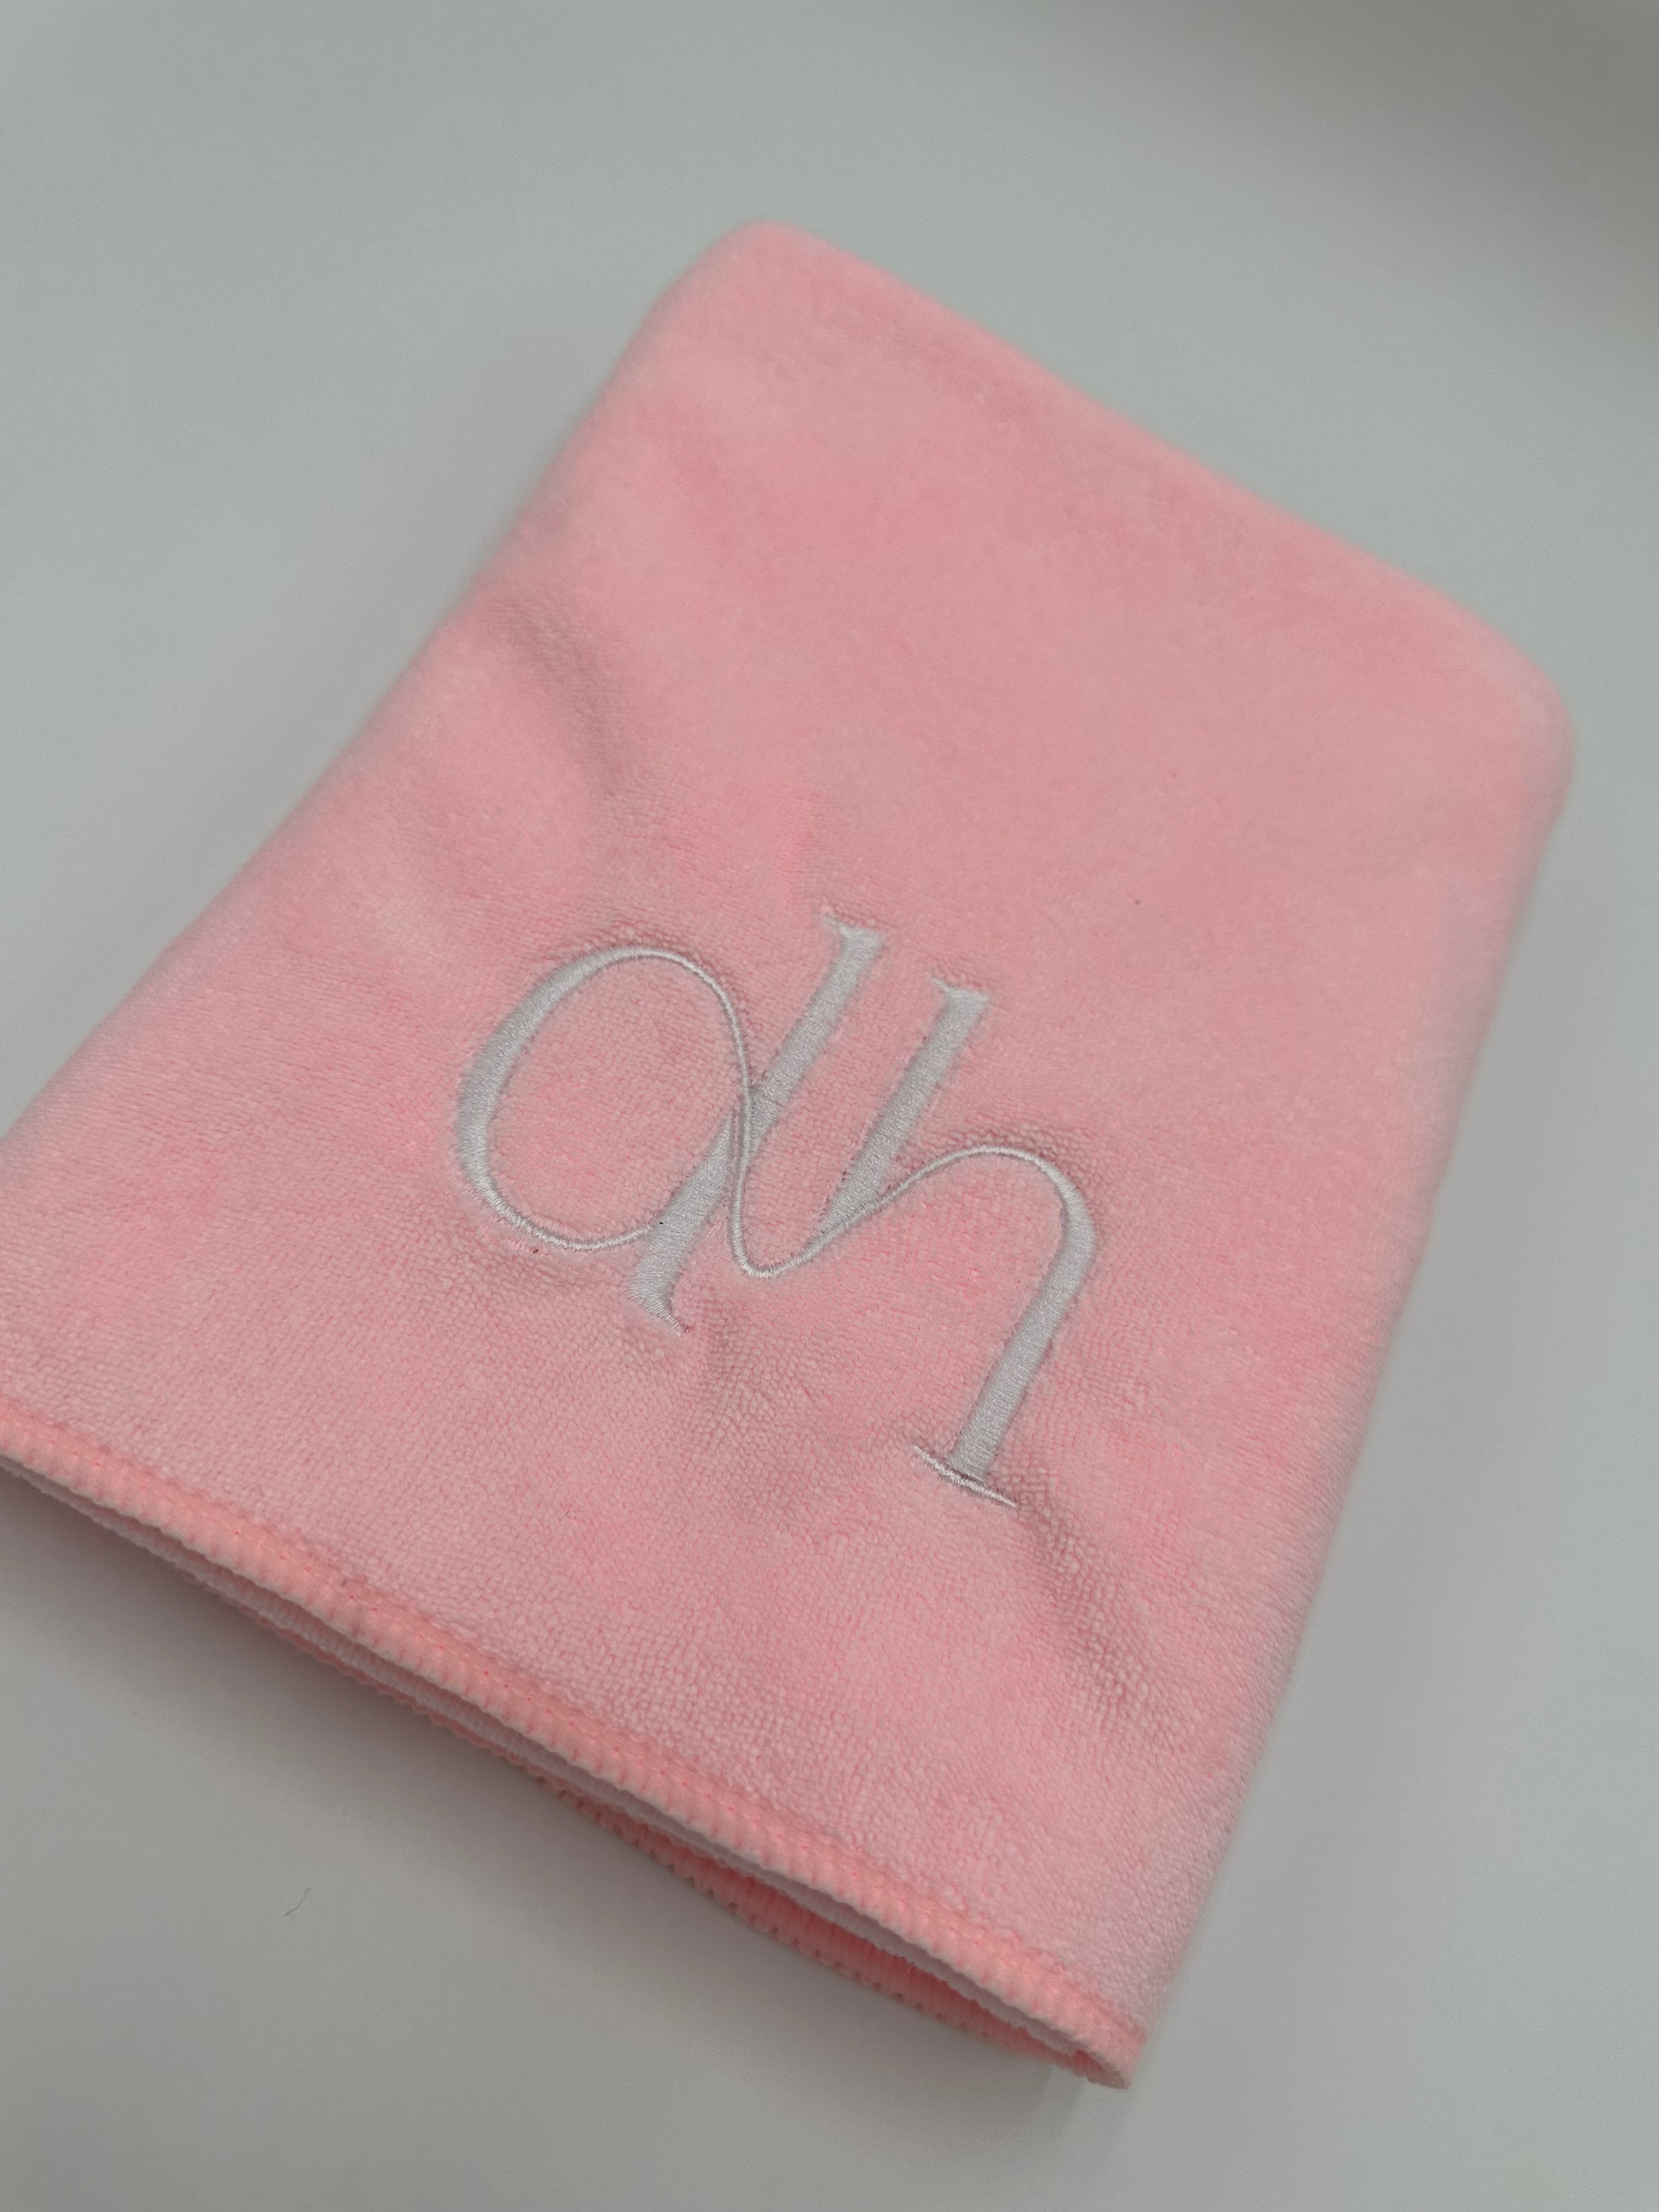 dh Luxury Branded Microfiber Doodle Towel